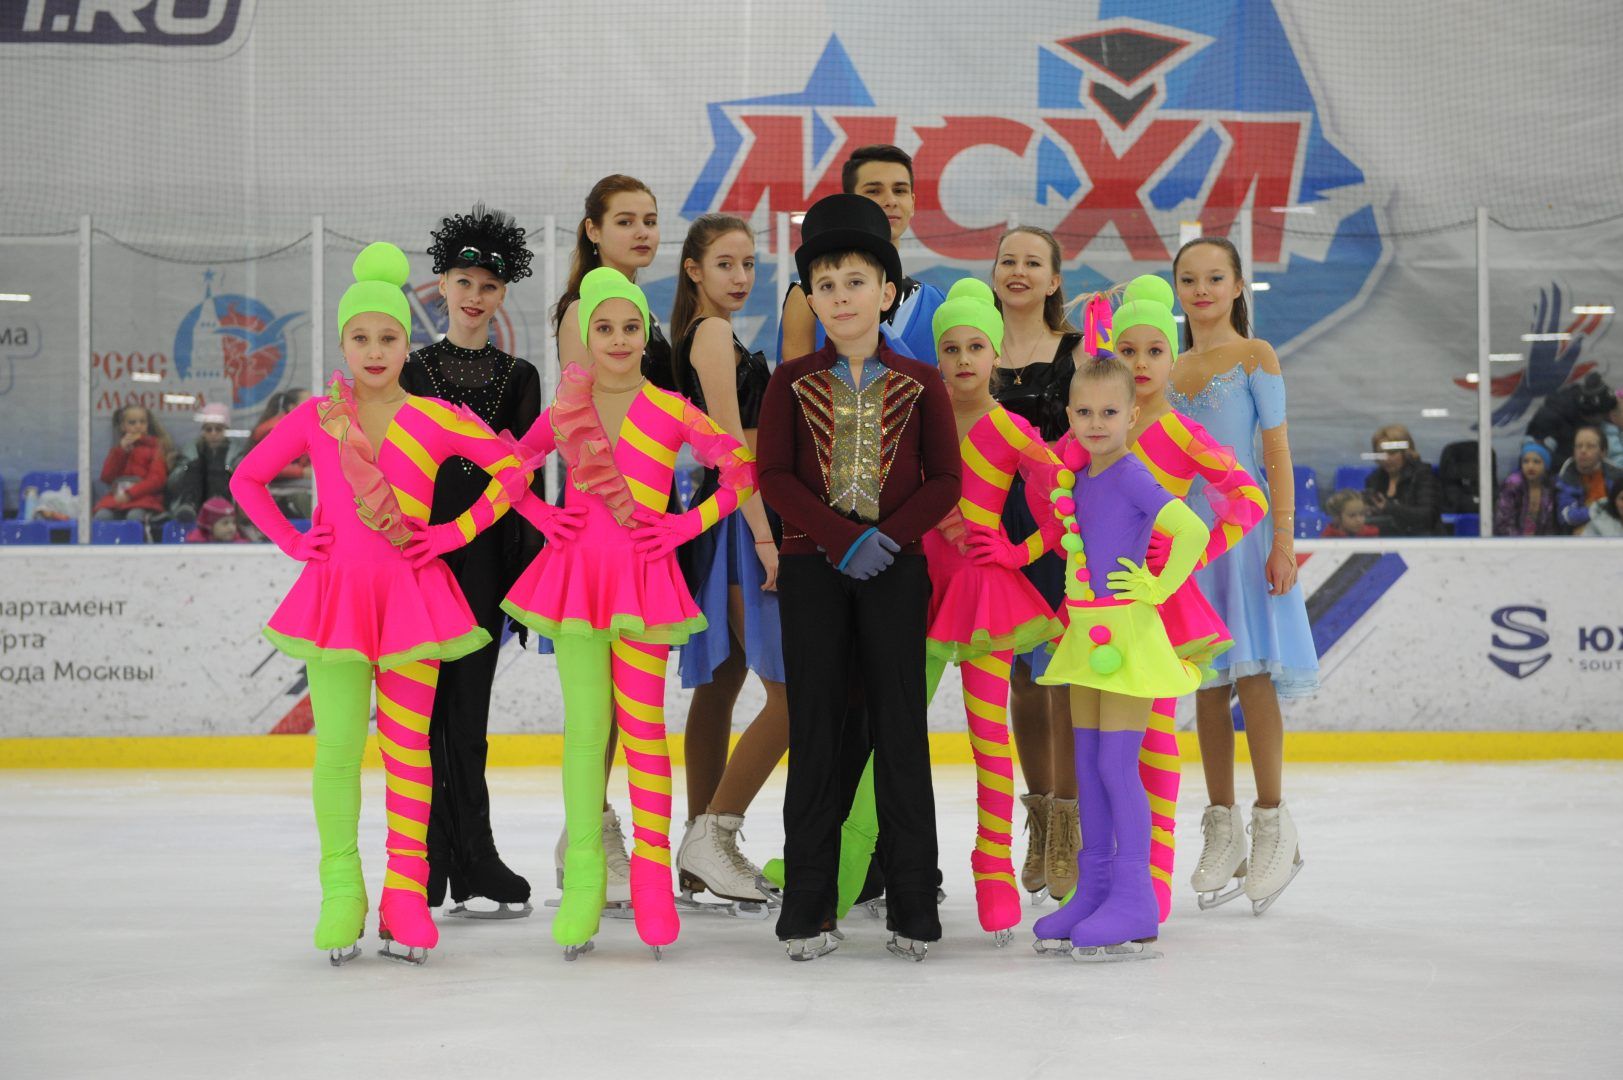 Детский танцевальный коллектив предствил яркую программу на льду. Фото: Игорь Генералов